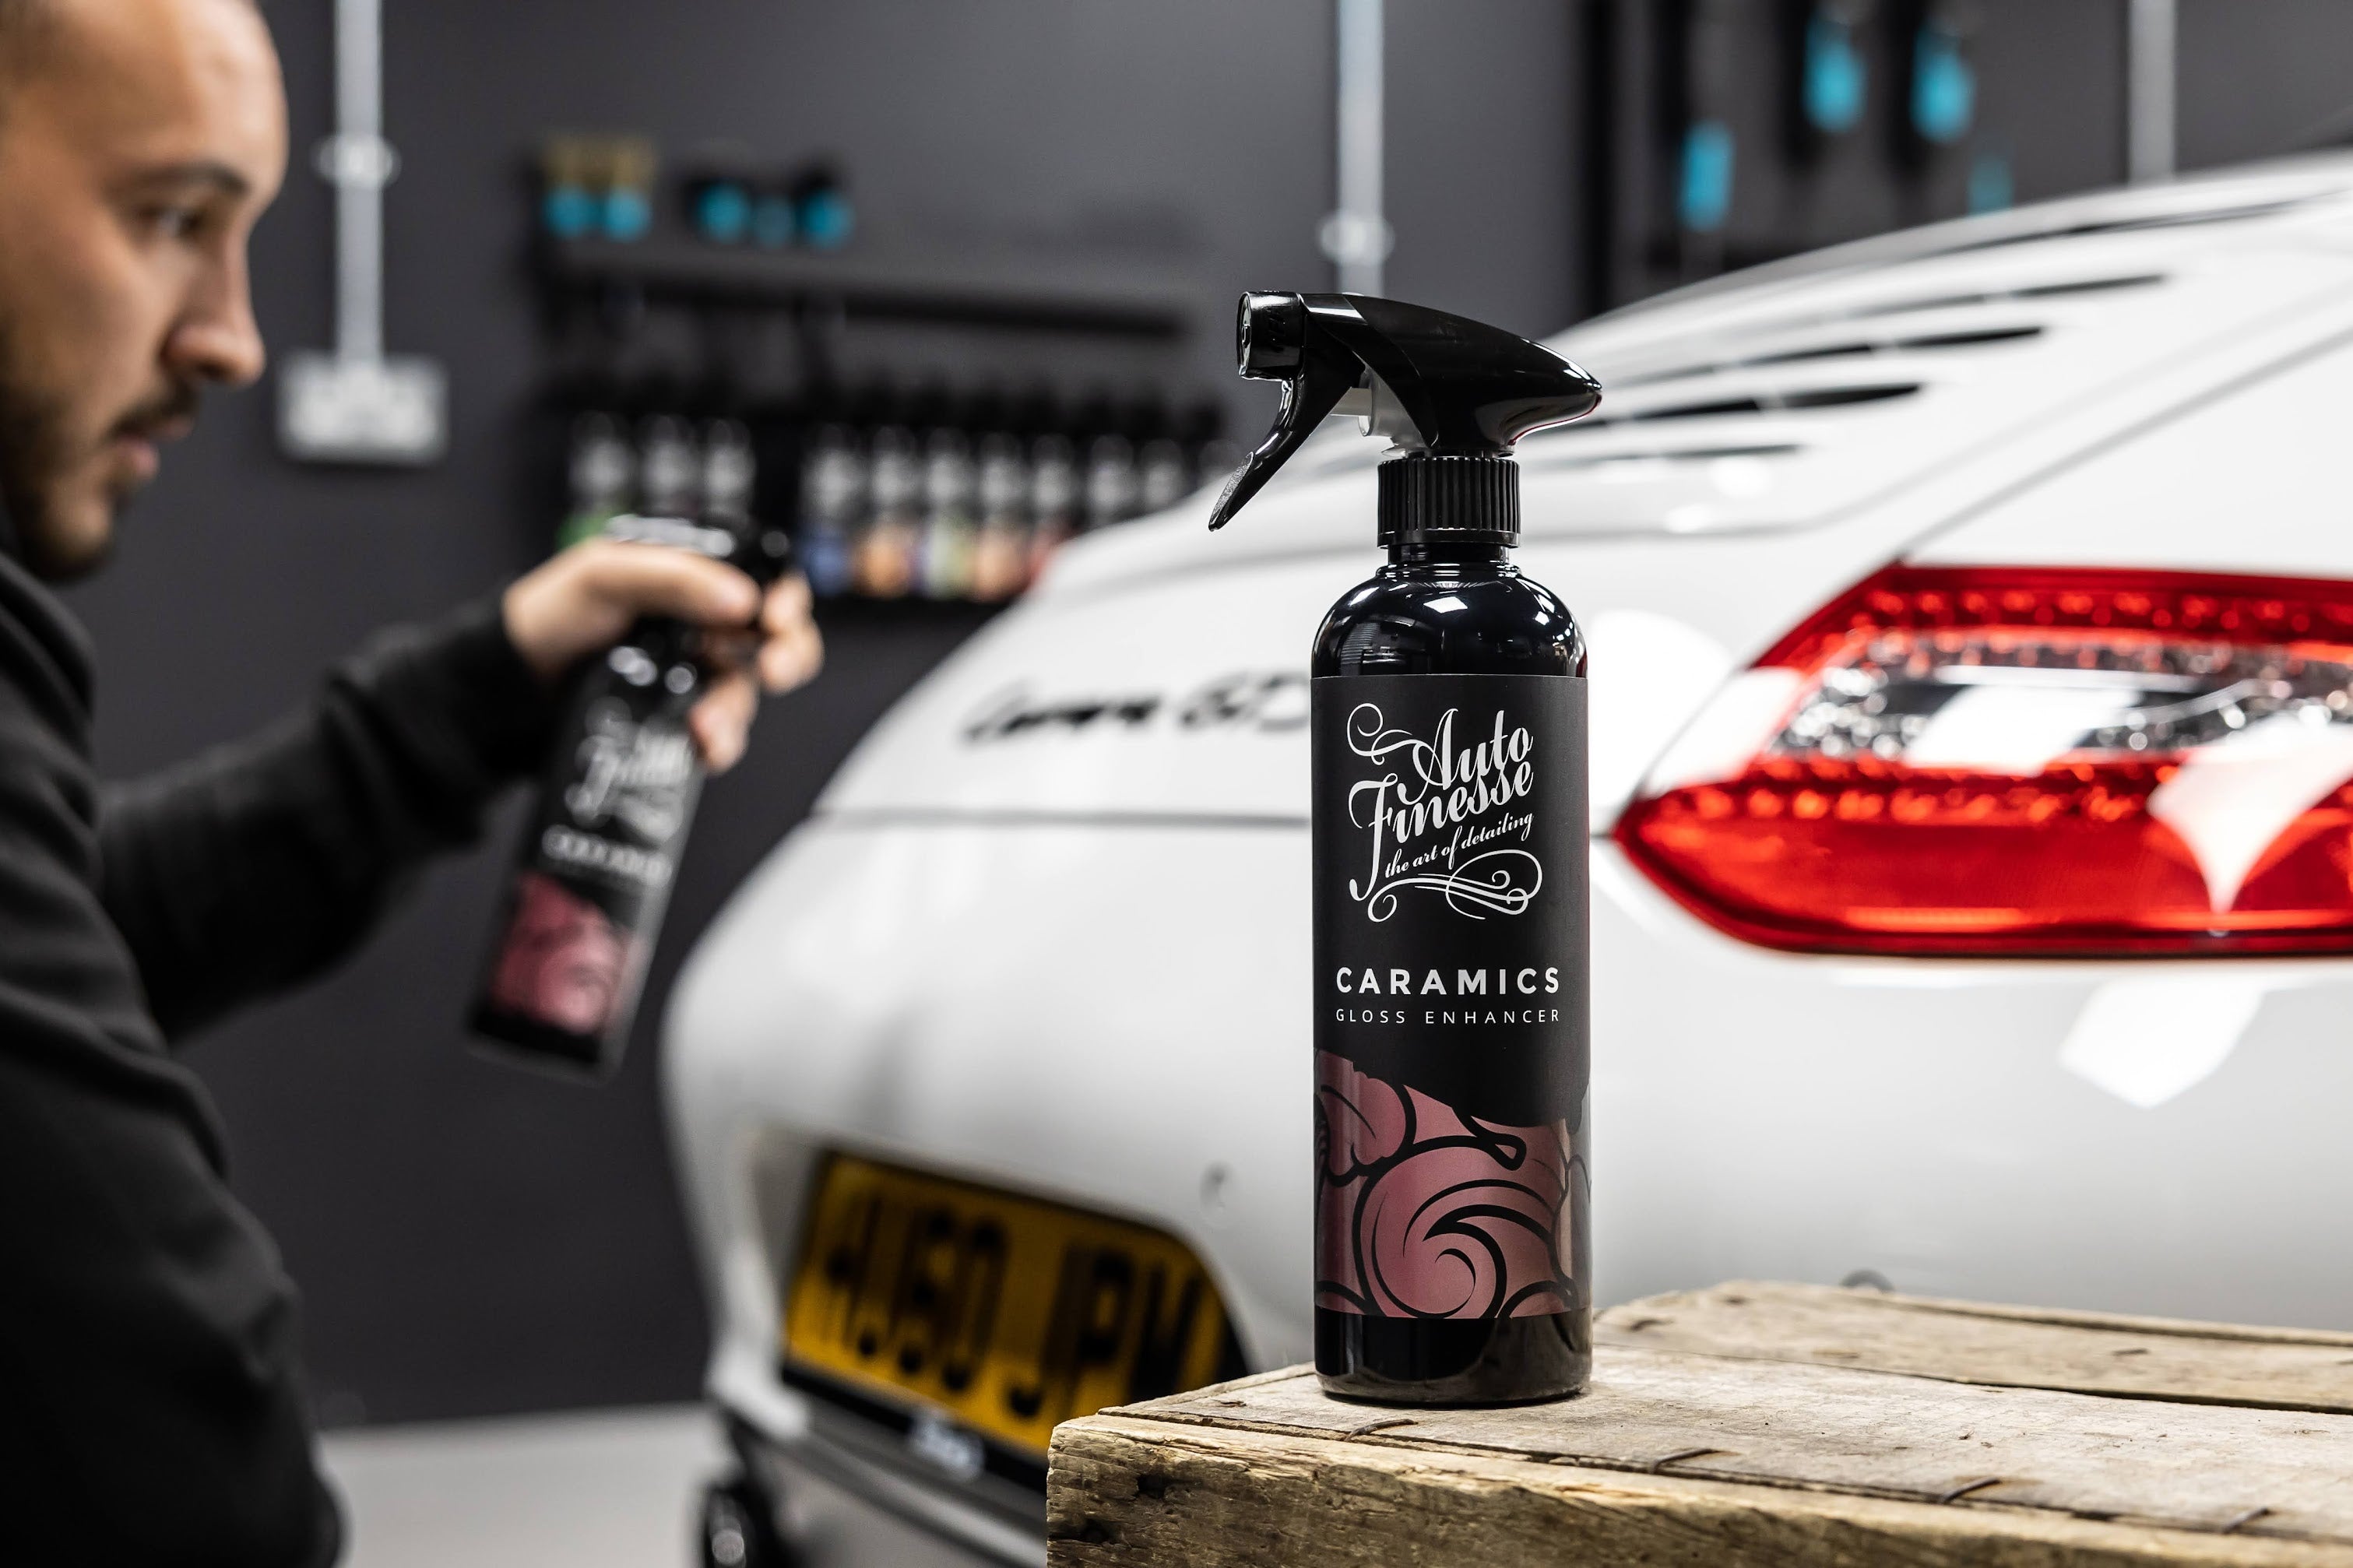 Ceramic Detail Spray – Legendary Car Care